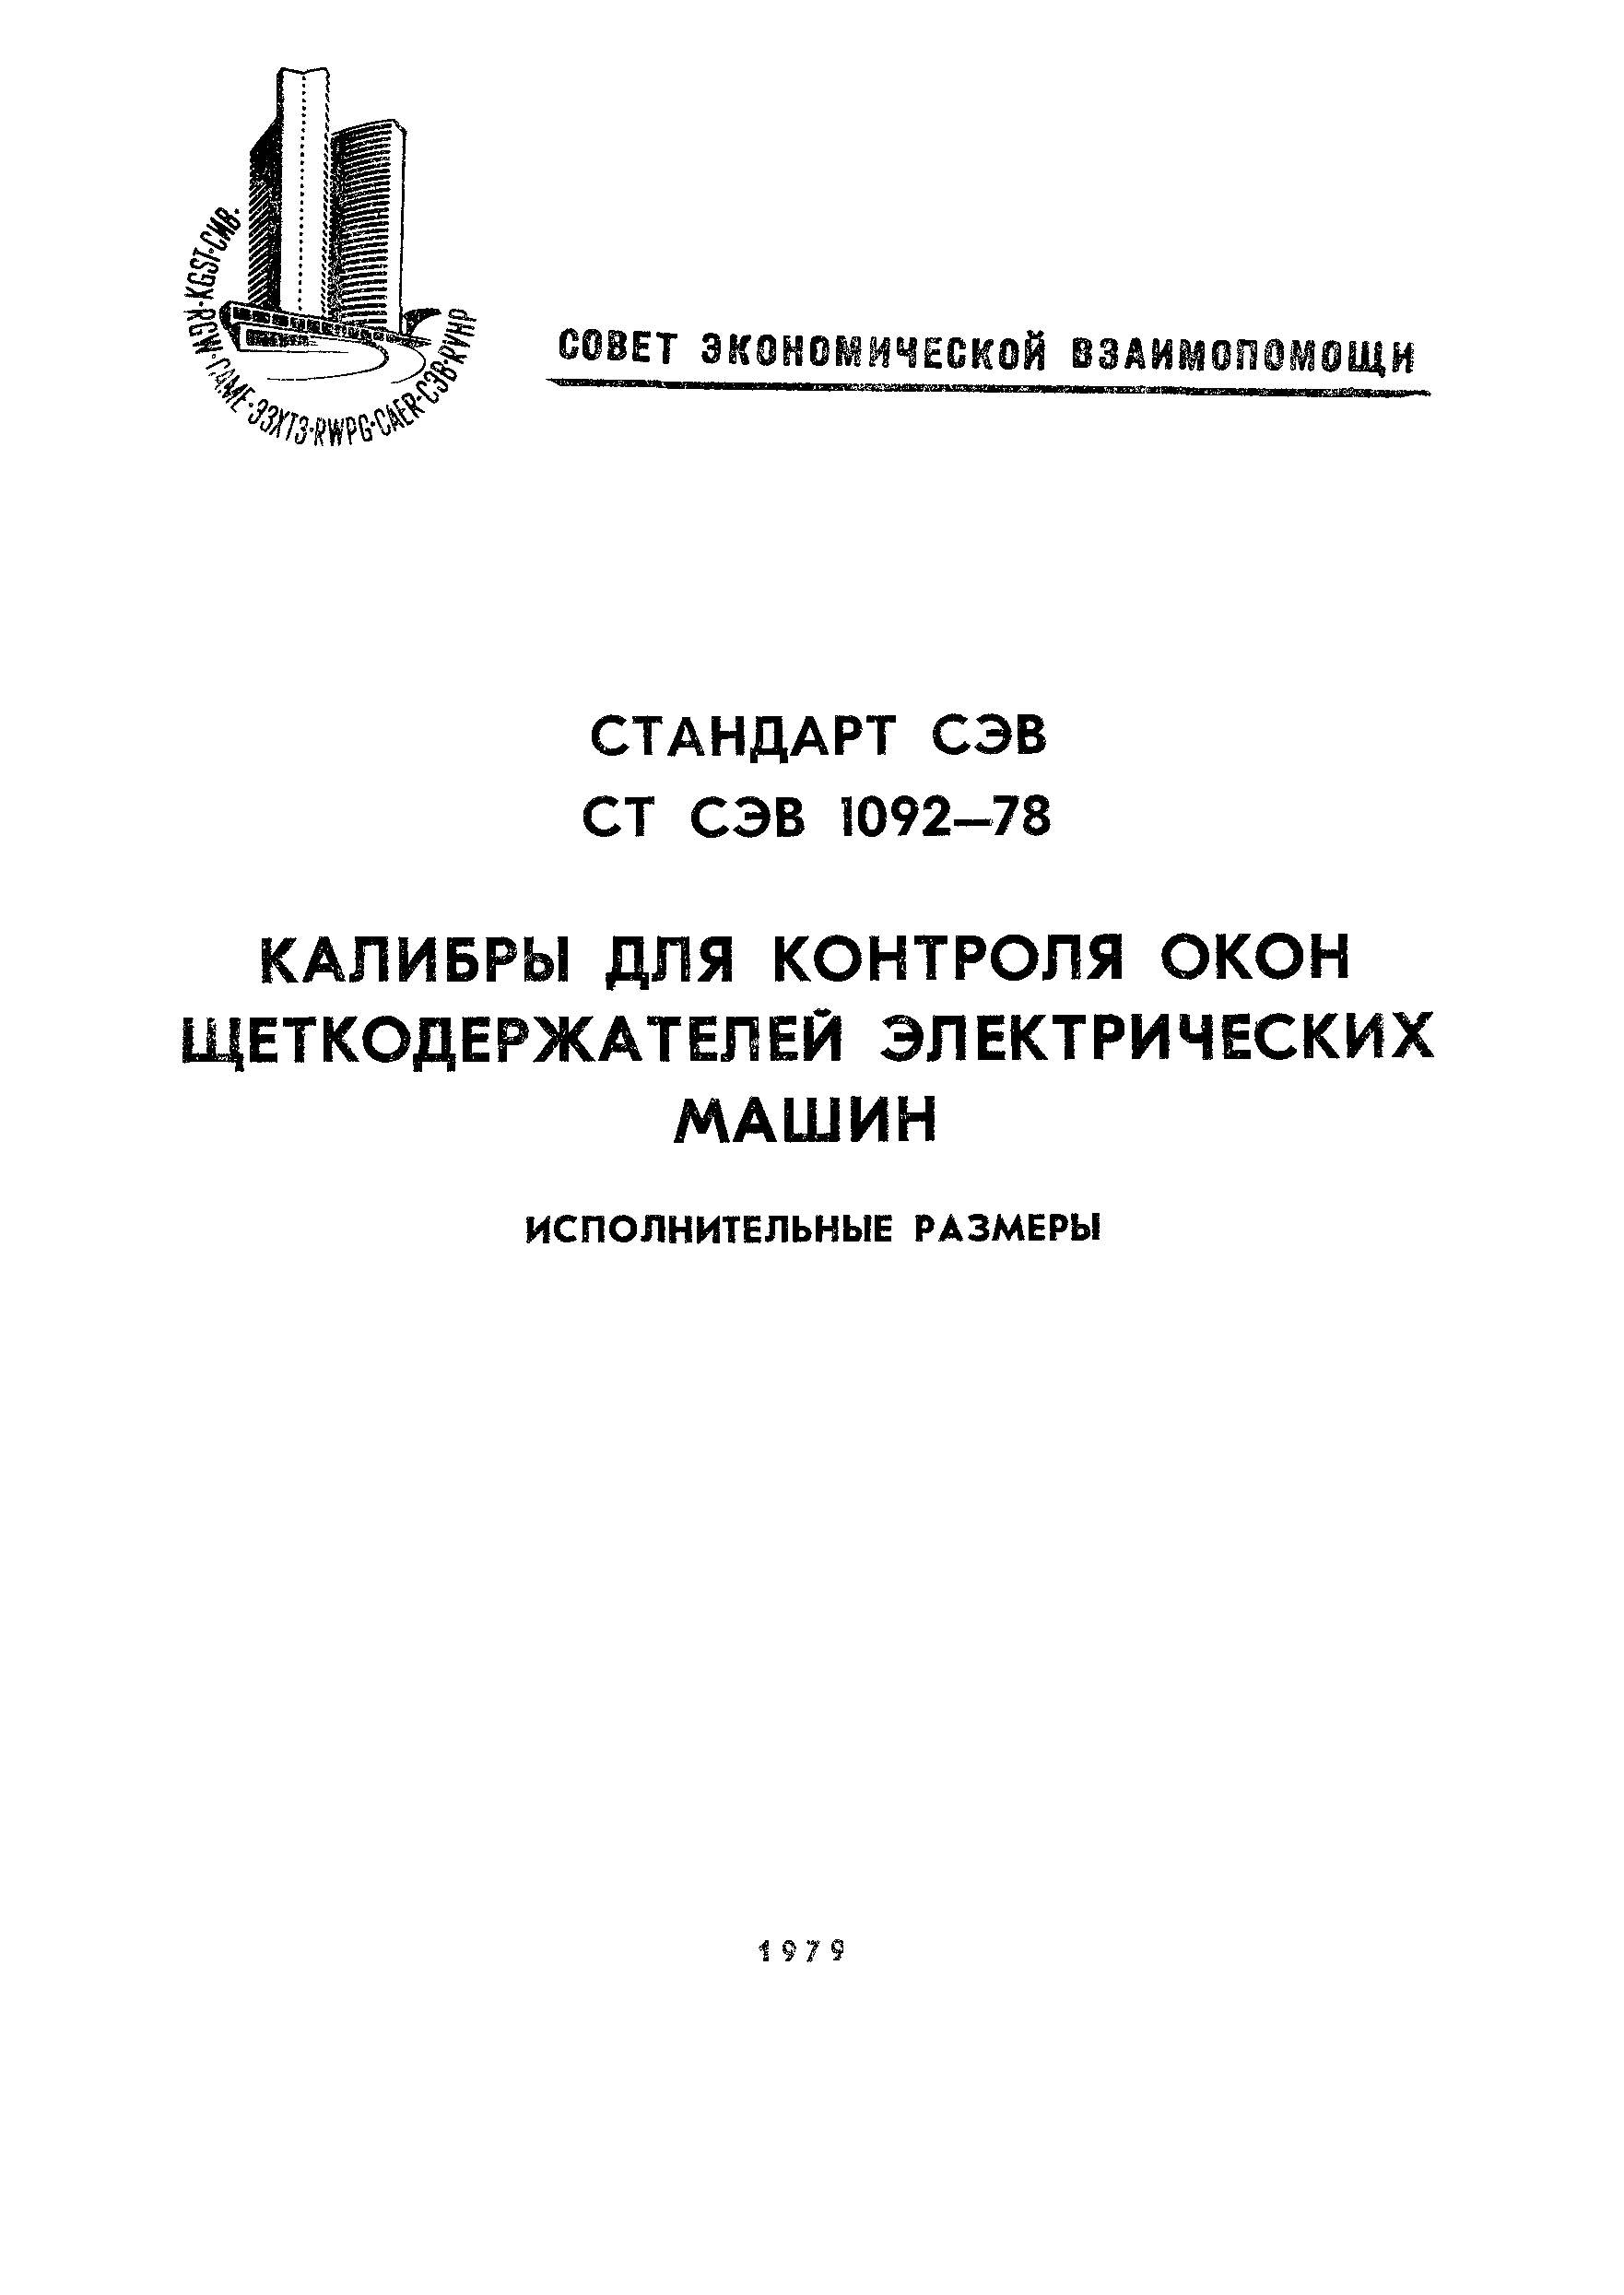 СТ СЭВ 1092-78